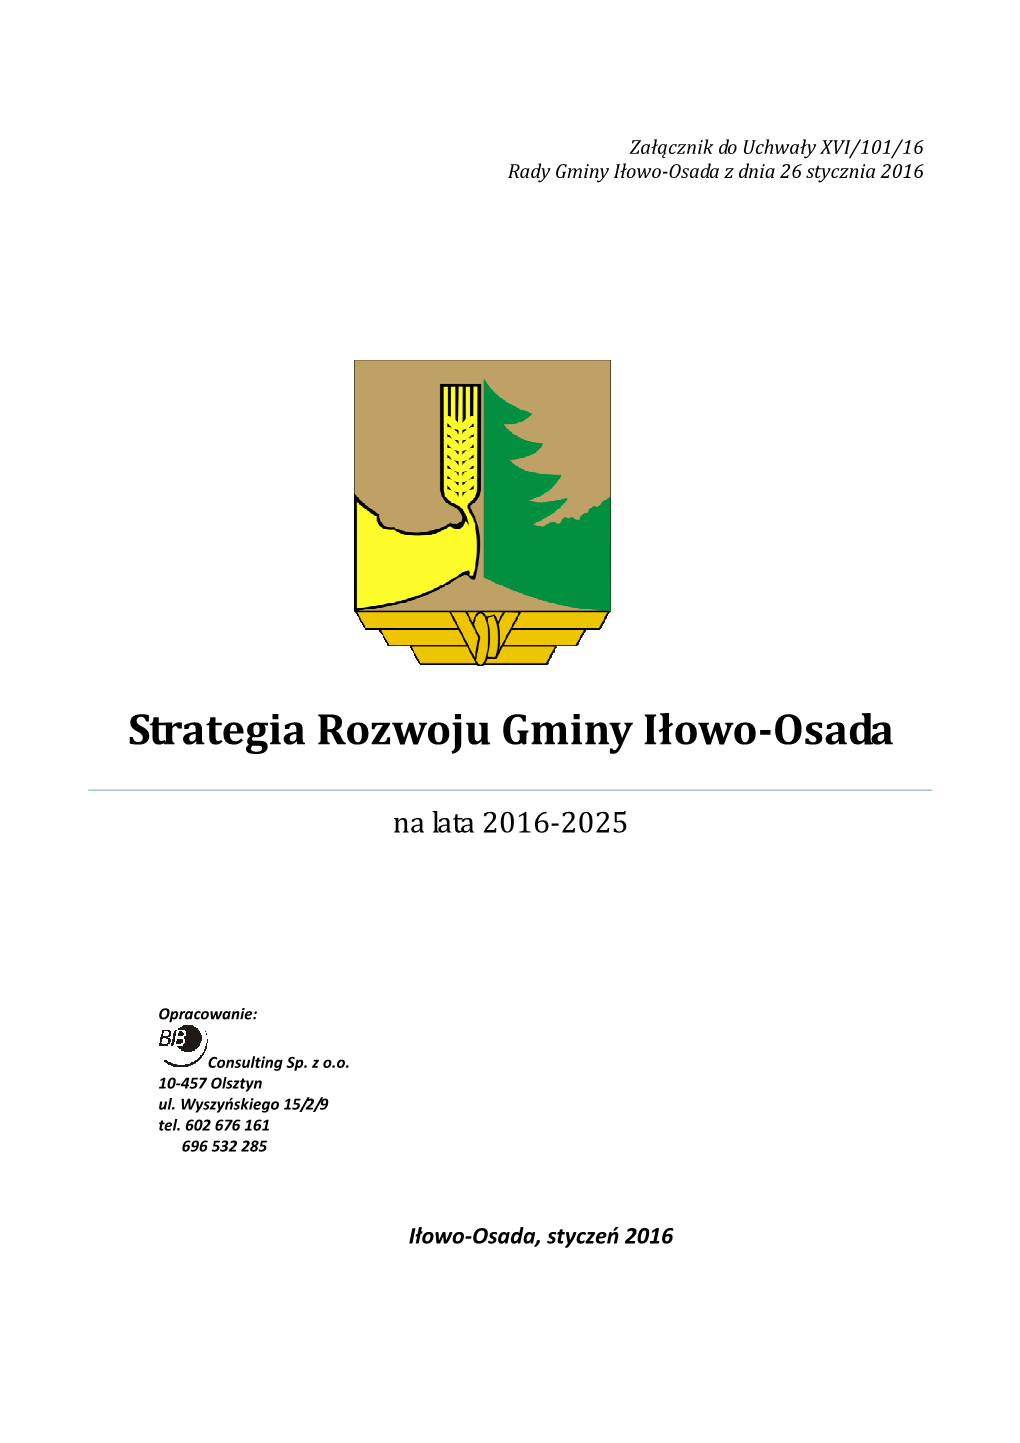 Strategia Rozwoju Gminy Iłowo- Osada Na Lata 2016-2025